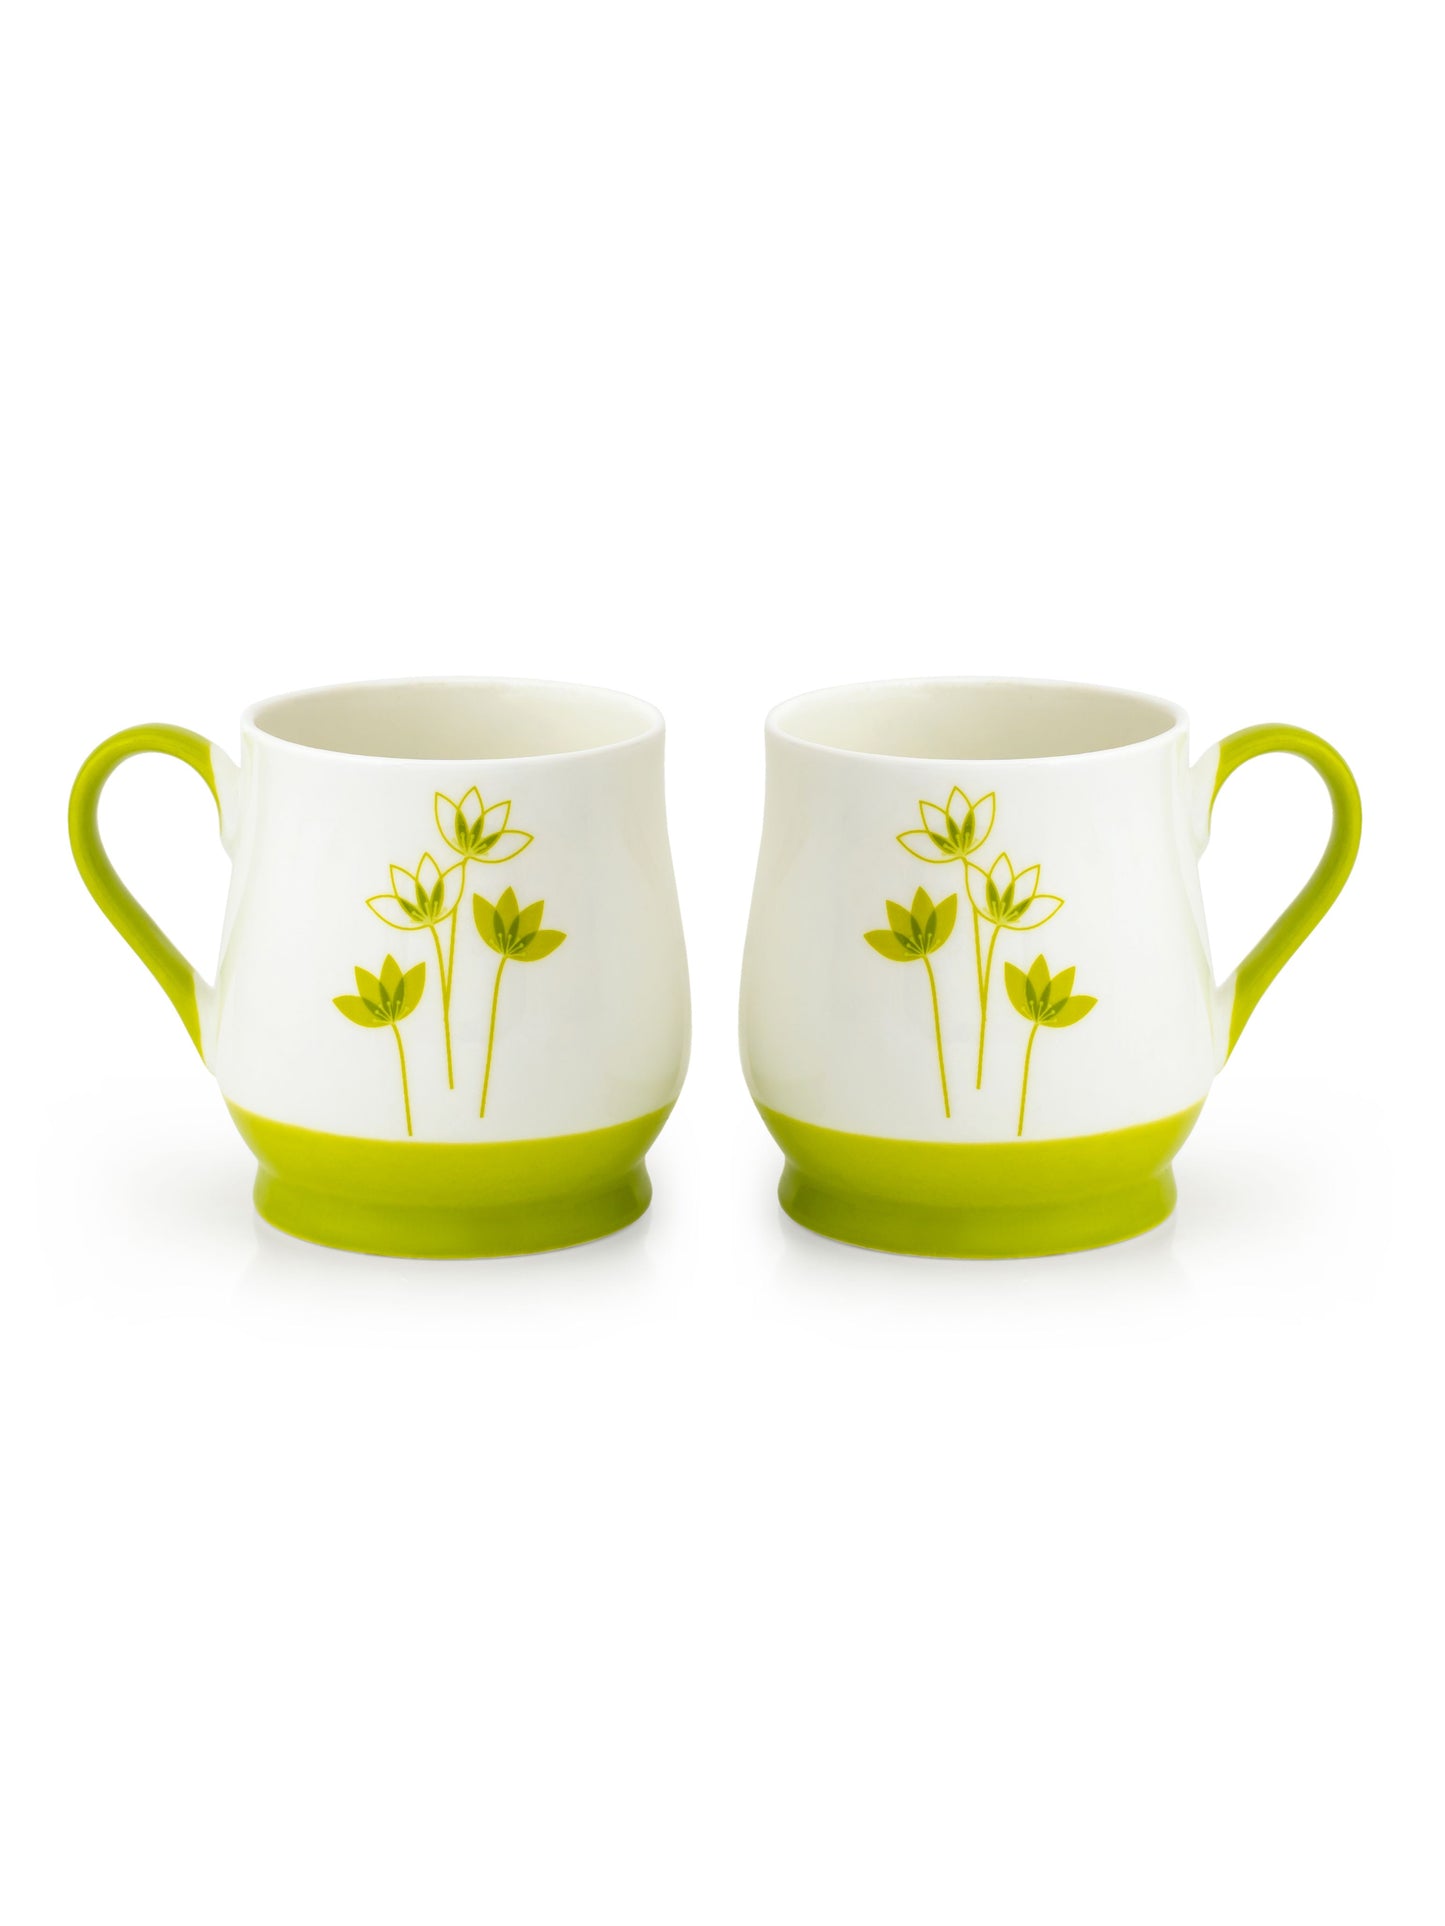 Adam Blossom Coffee & Tea Mug Set of 6 (BL3)